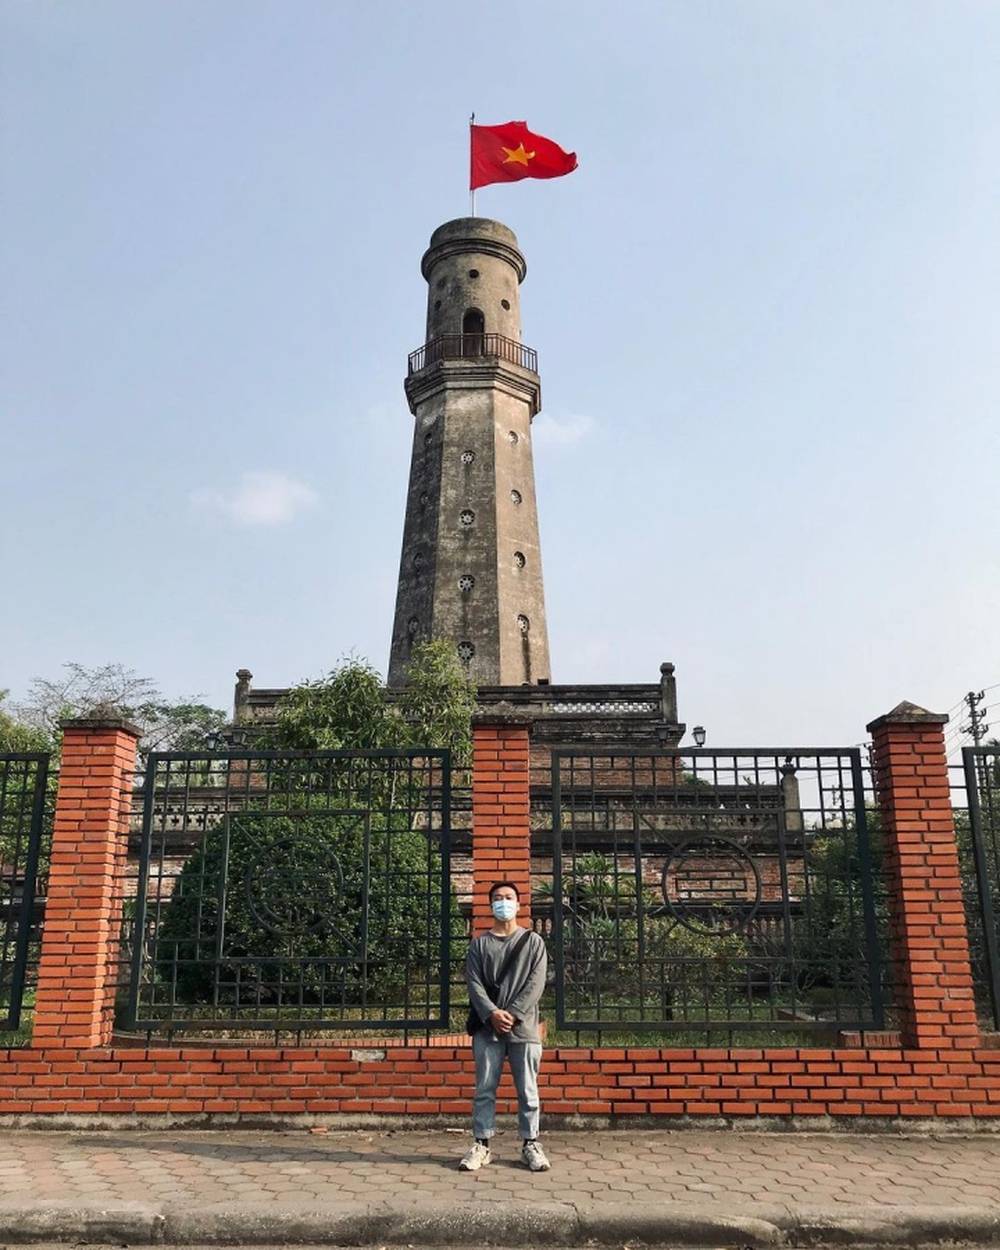 Tự hào chiêm ngưỡng 5 cột cờ kiêu hãnh tung bay dọc mảnh đất Việt Nam